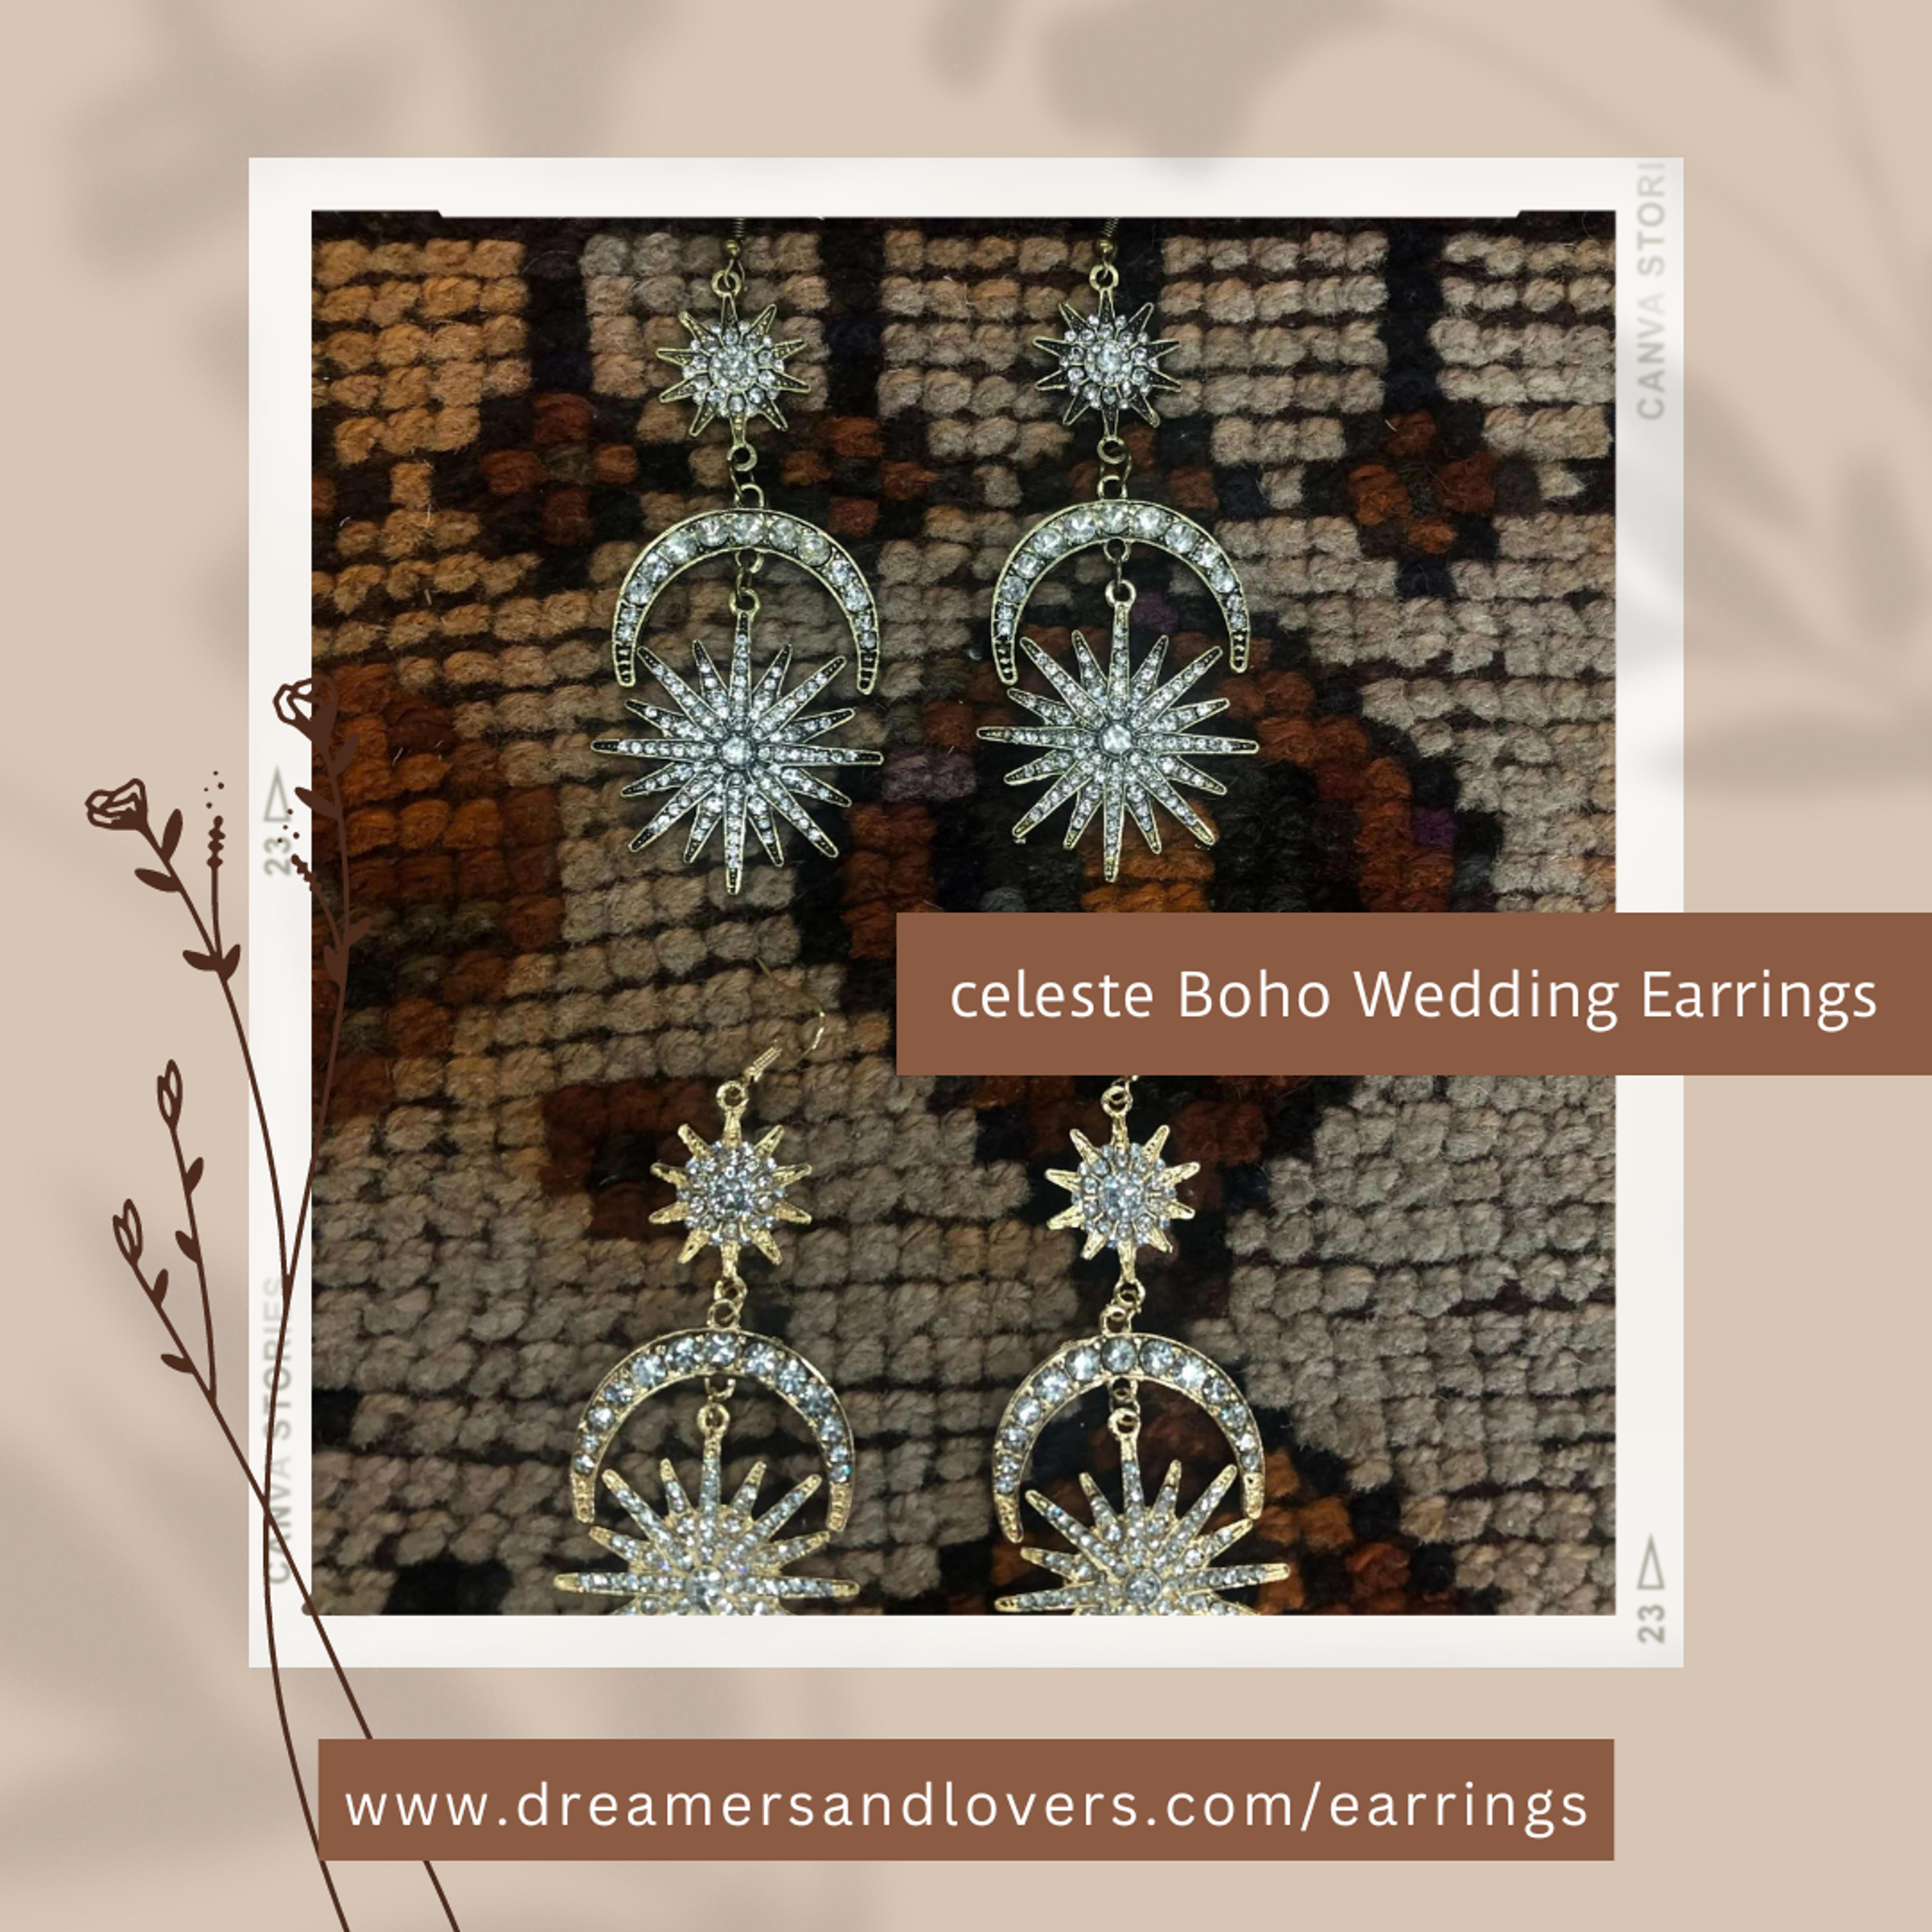 Celeste Boho Wedding Earrings At Dreamers And Lovers